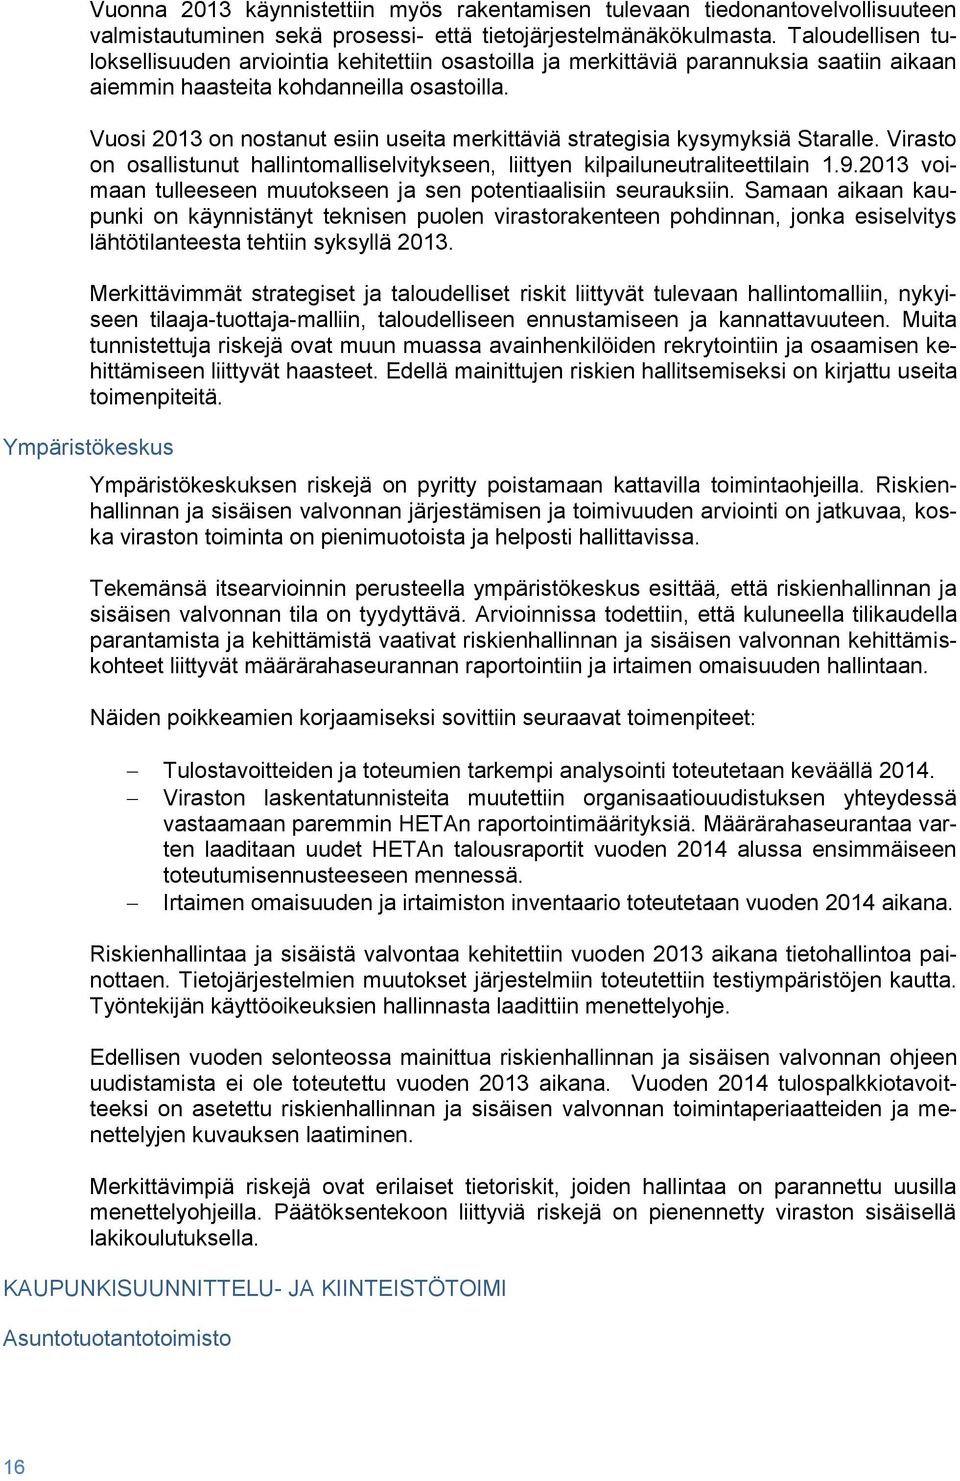 Vuosi 2013 on nostanut esiin useita merkittäviä strategisia kysymyksiä Staralle. Virasto on osallistunut hallintomalliselvitykseen, liittyen kilpailuneutraliteettilain 1.9.